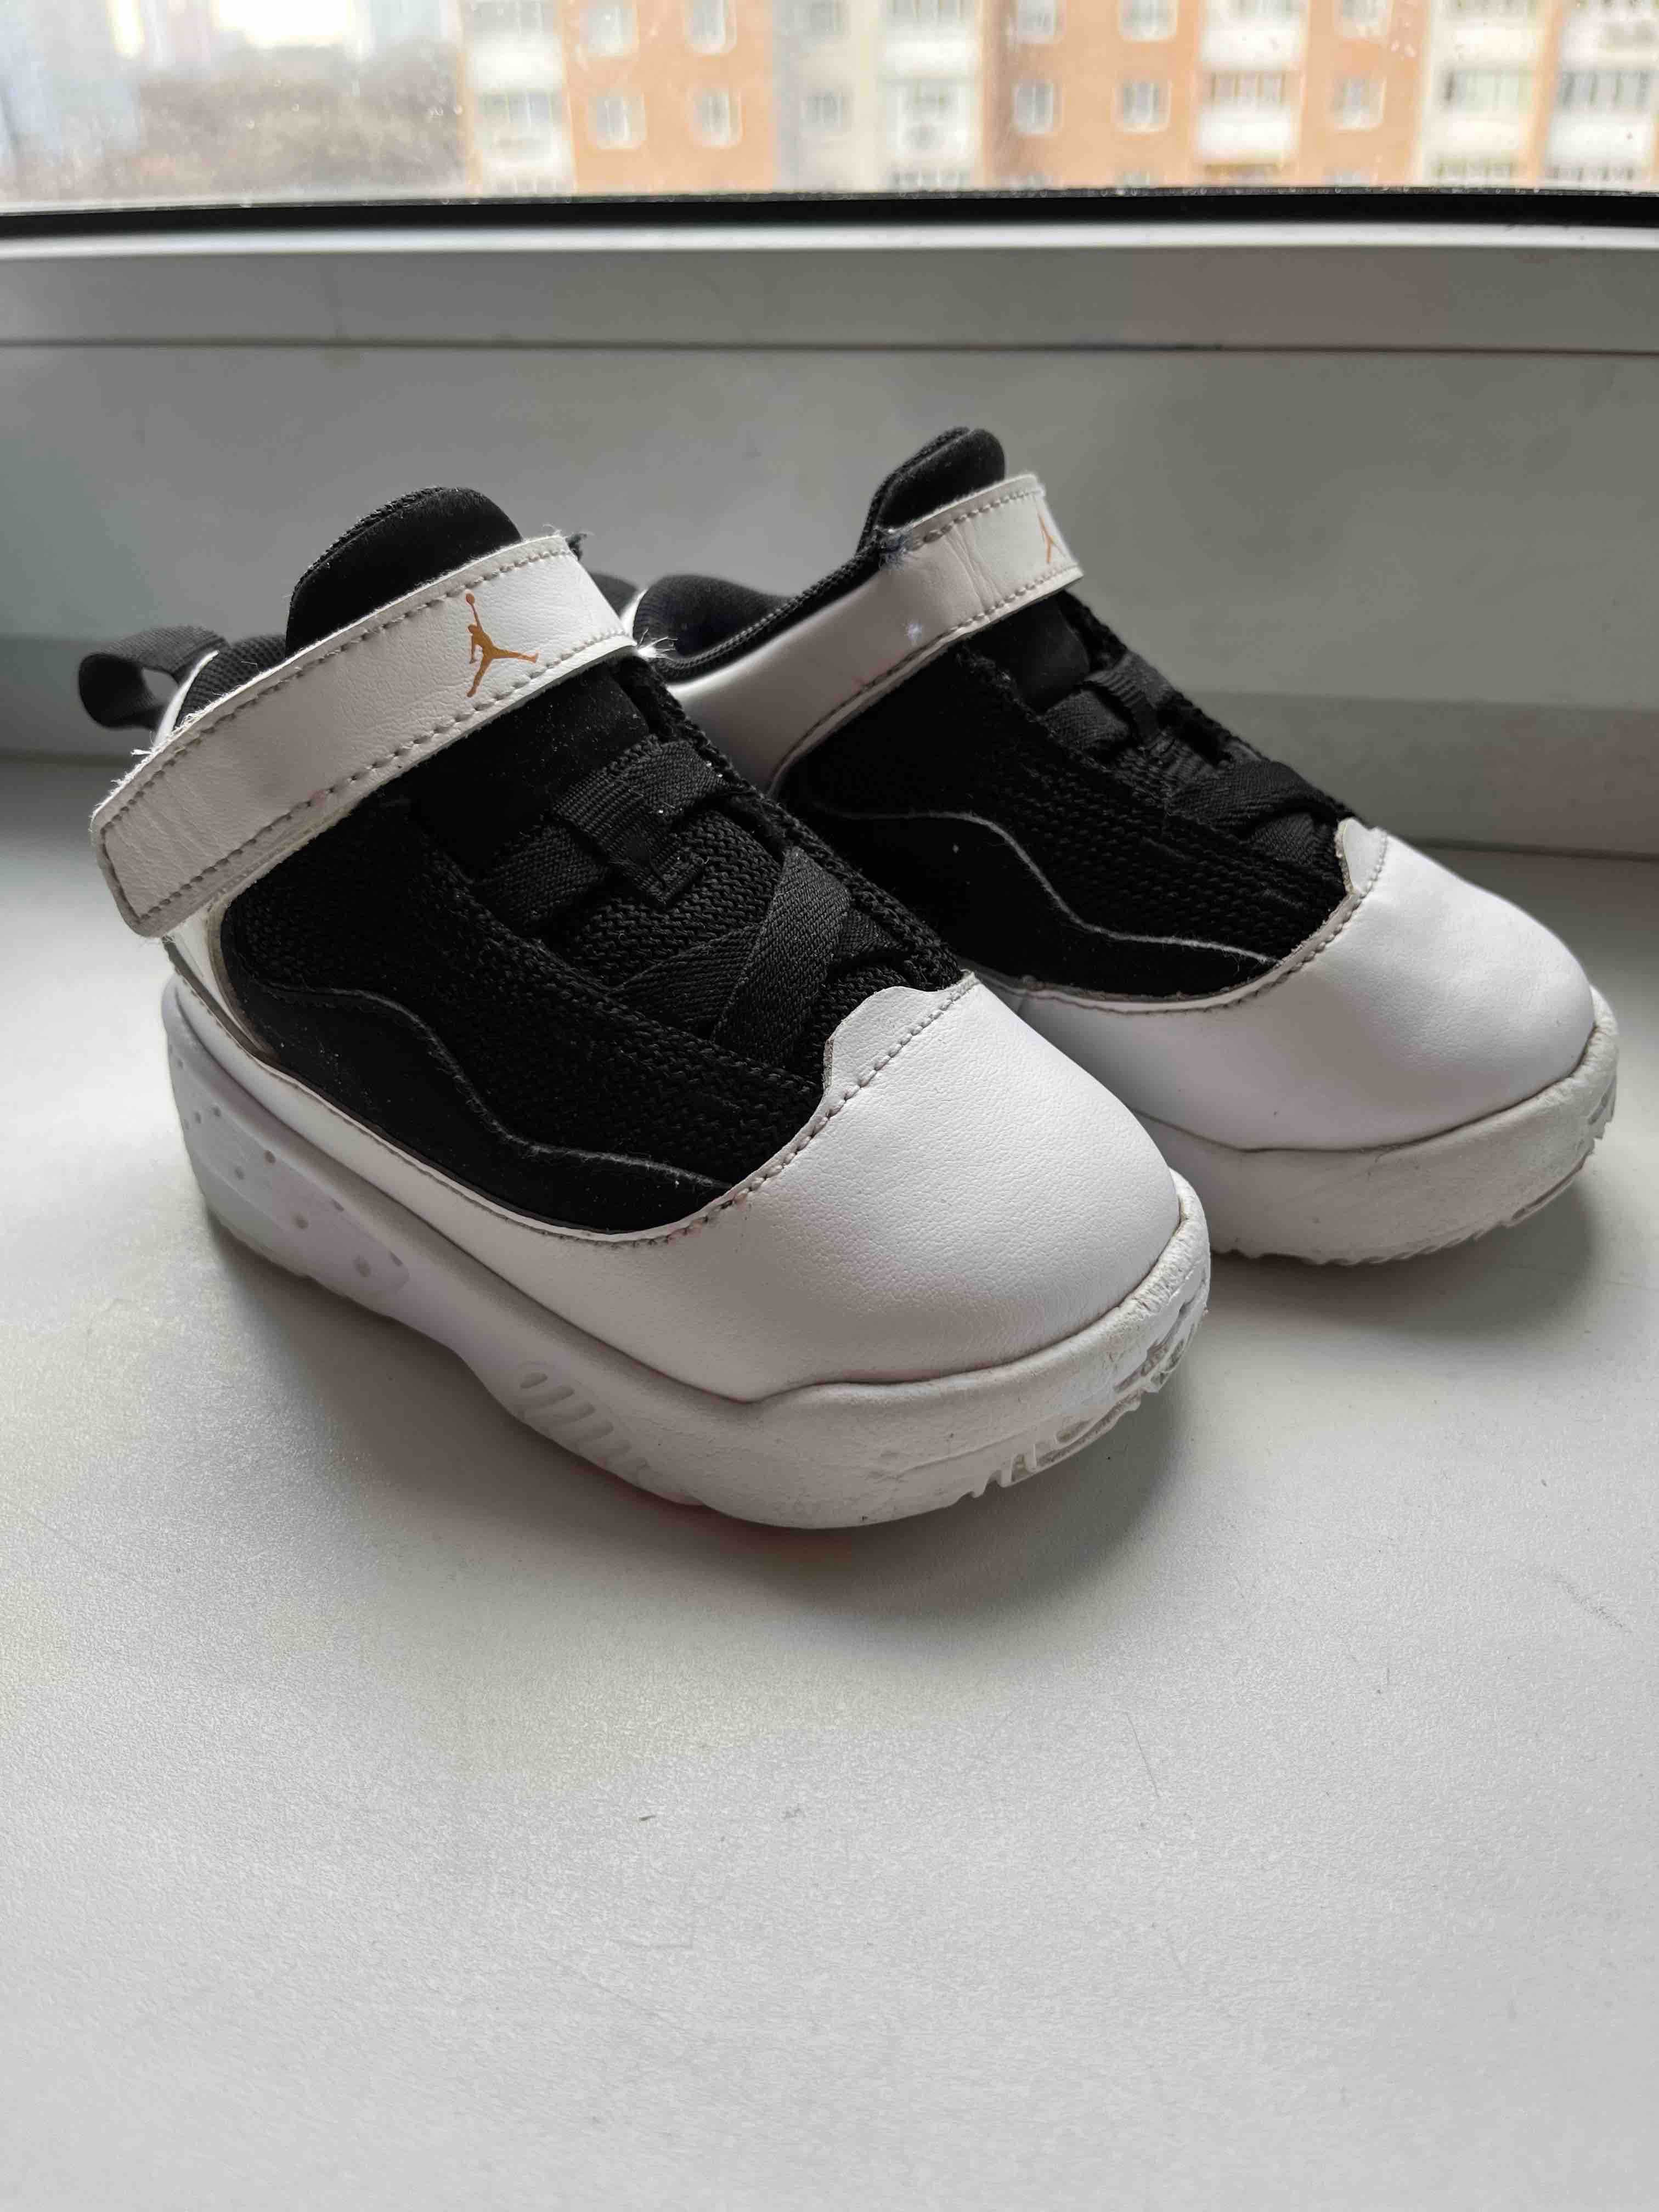 Продам детские кроссовки Jordan, размер 22